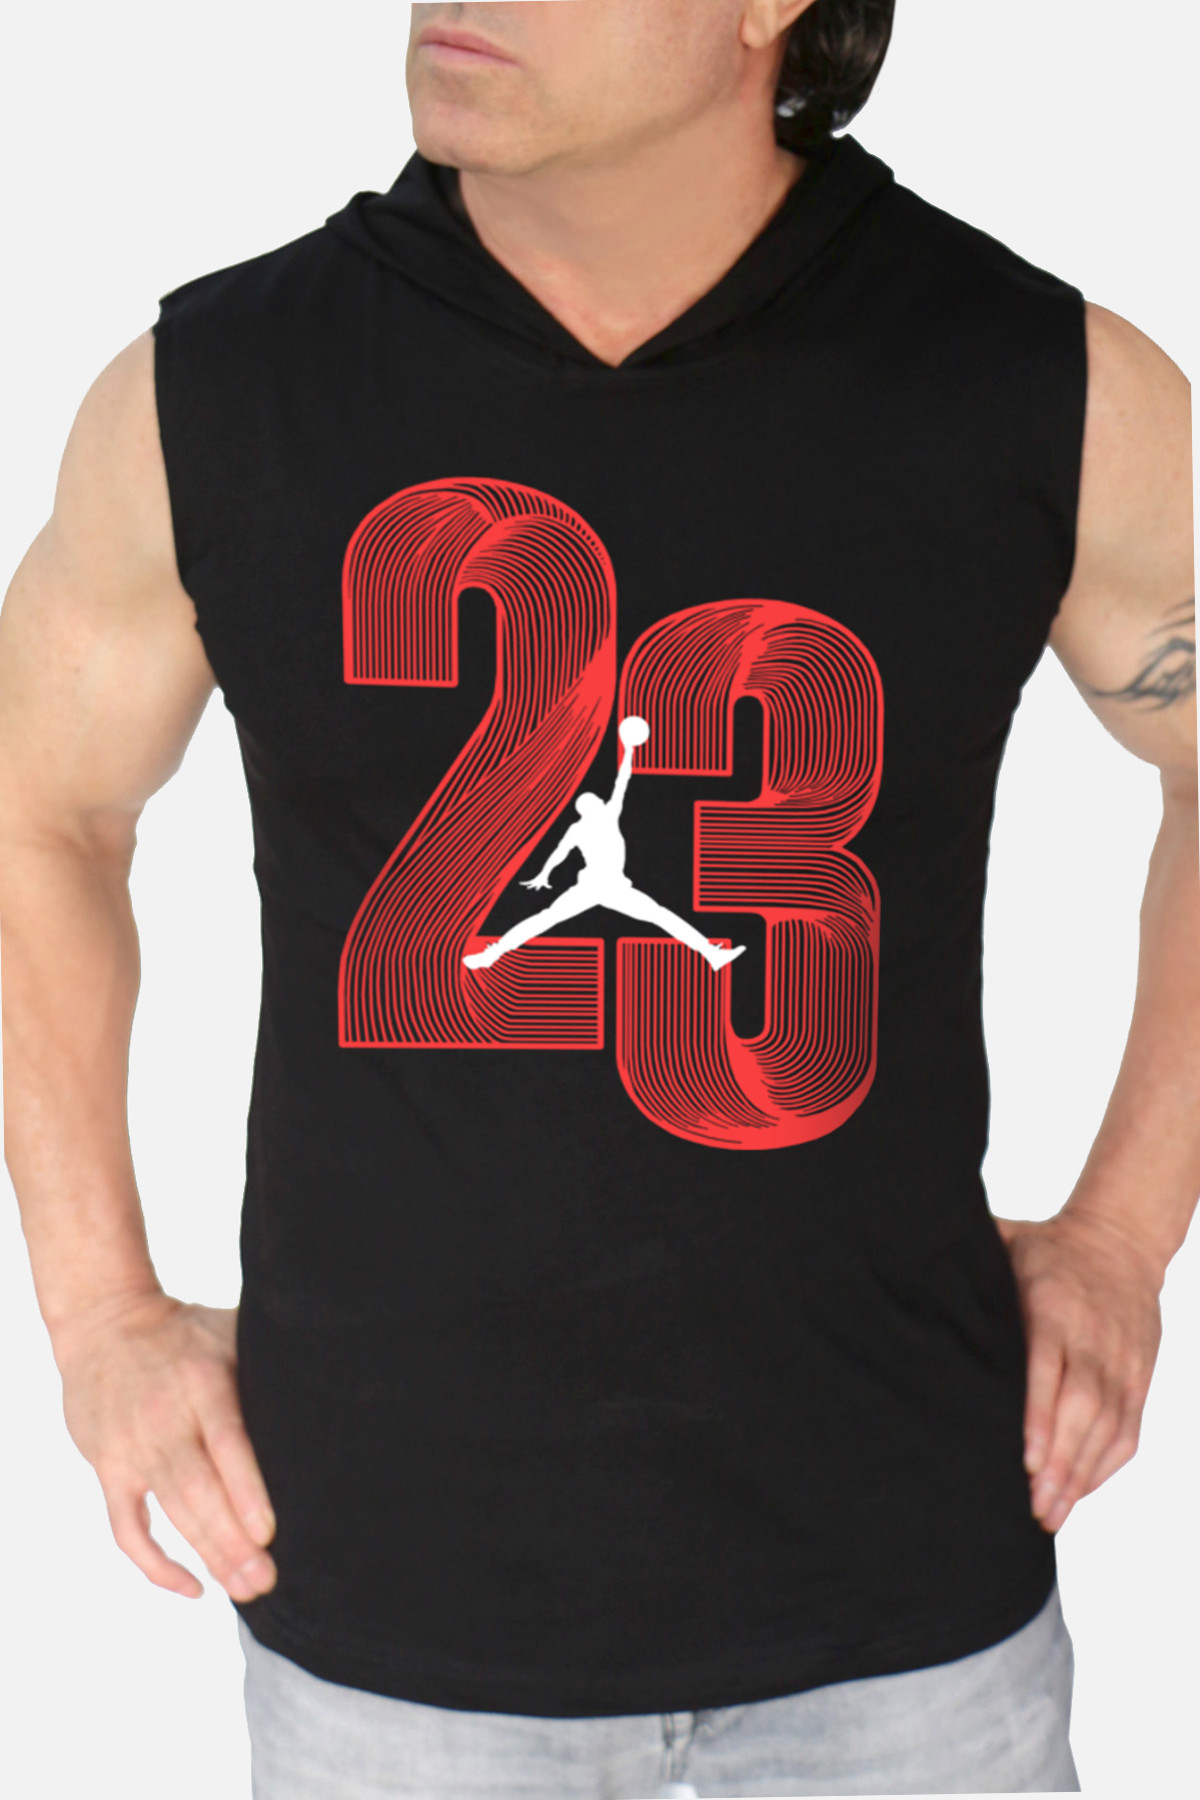 Yirmi Üç Siyah Kapşonlu | Kolsuz Erkek Atlet T-shirt